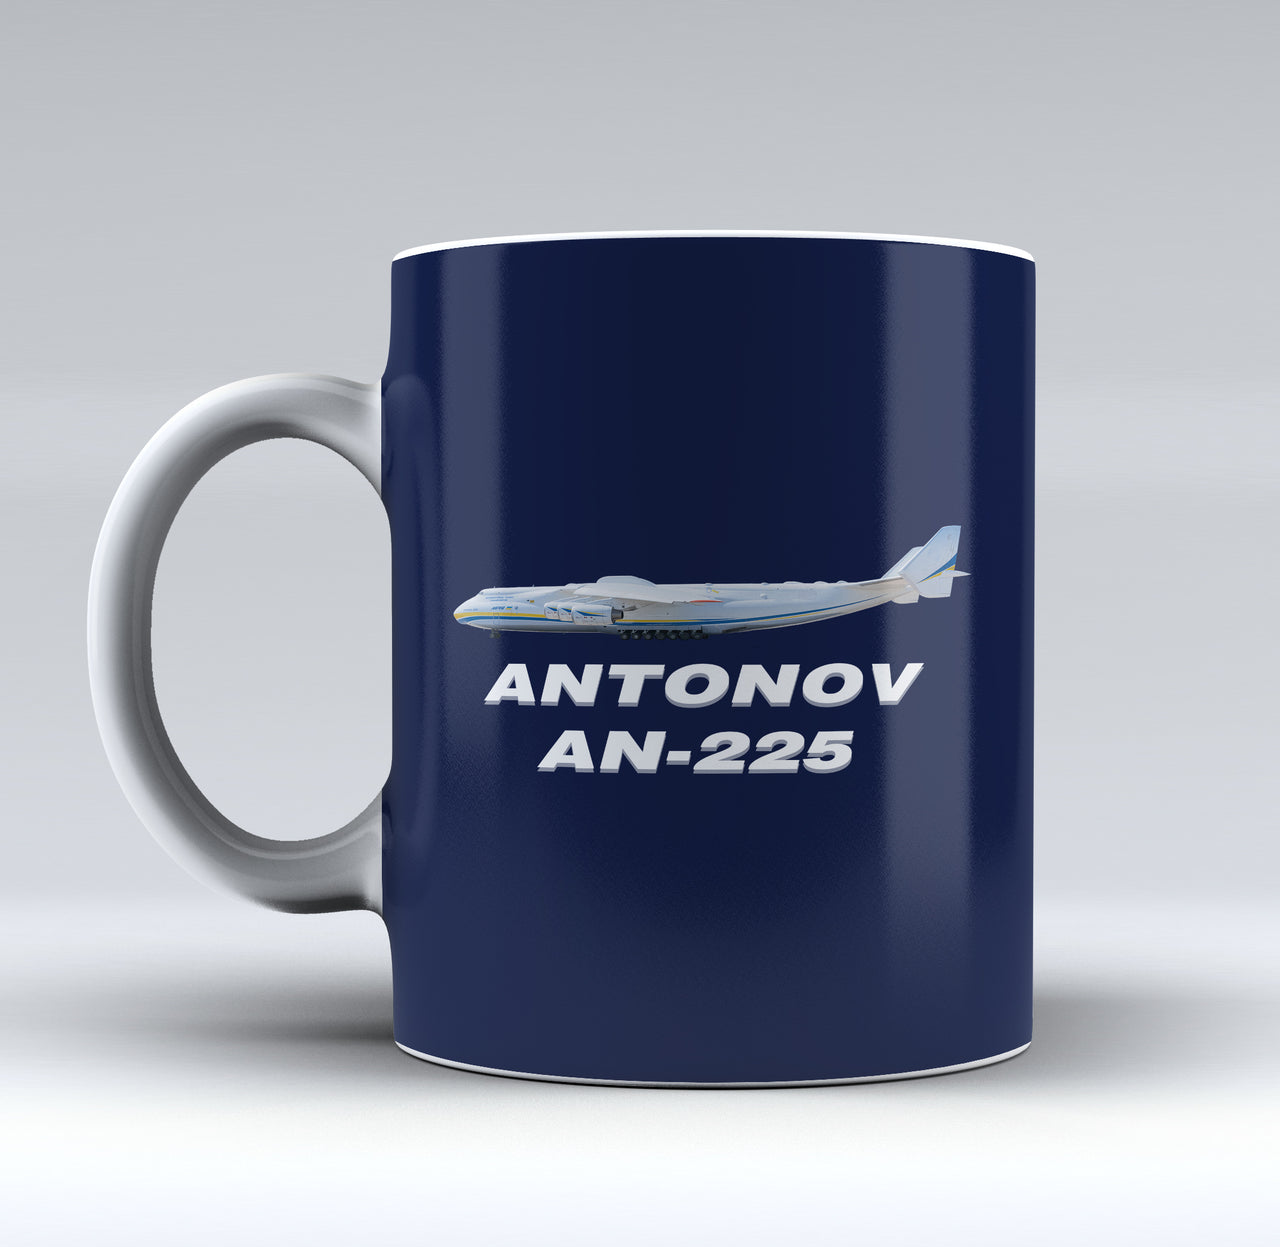 The Antonov AN-225 Designed Mugs